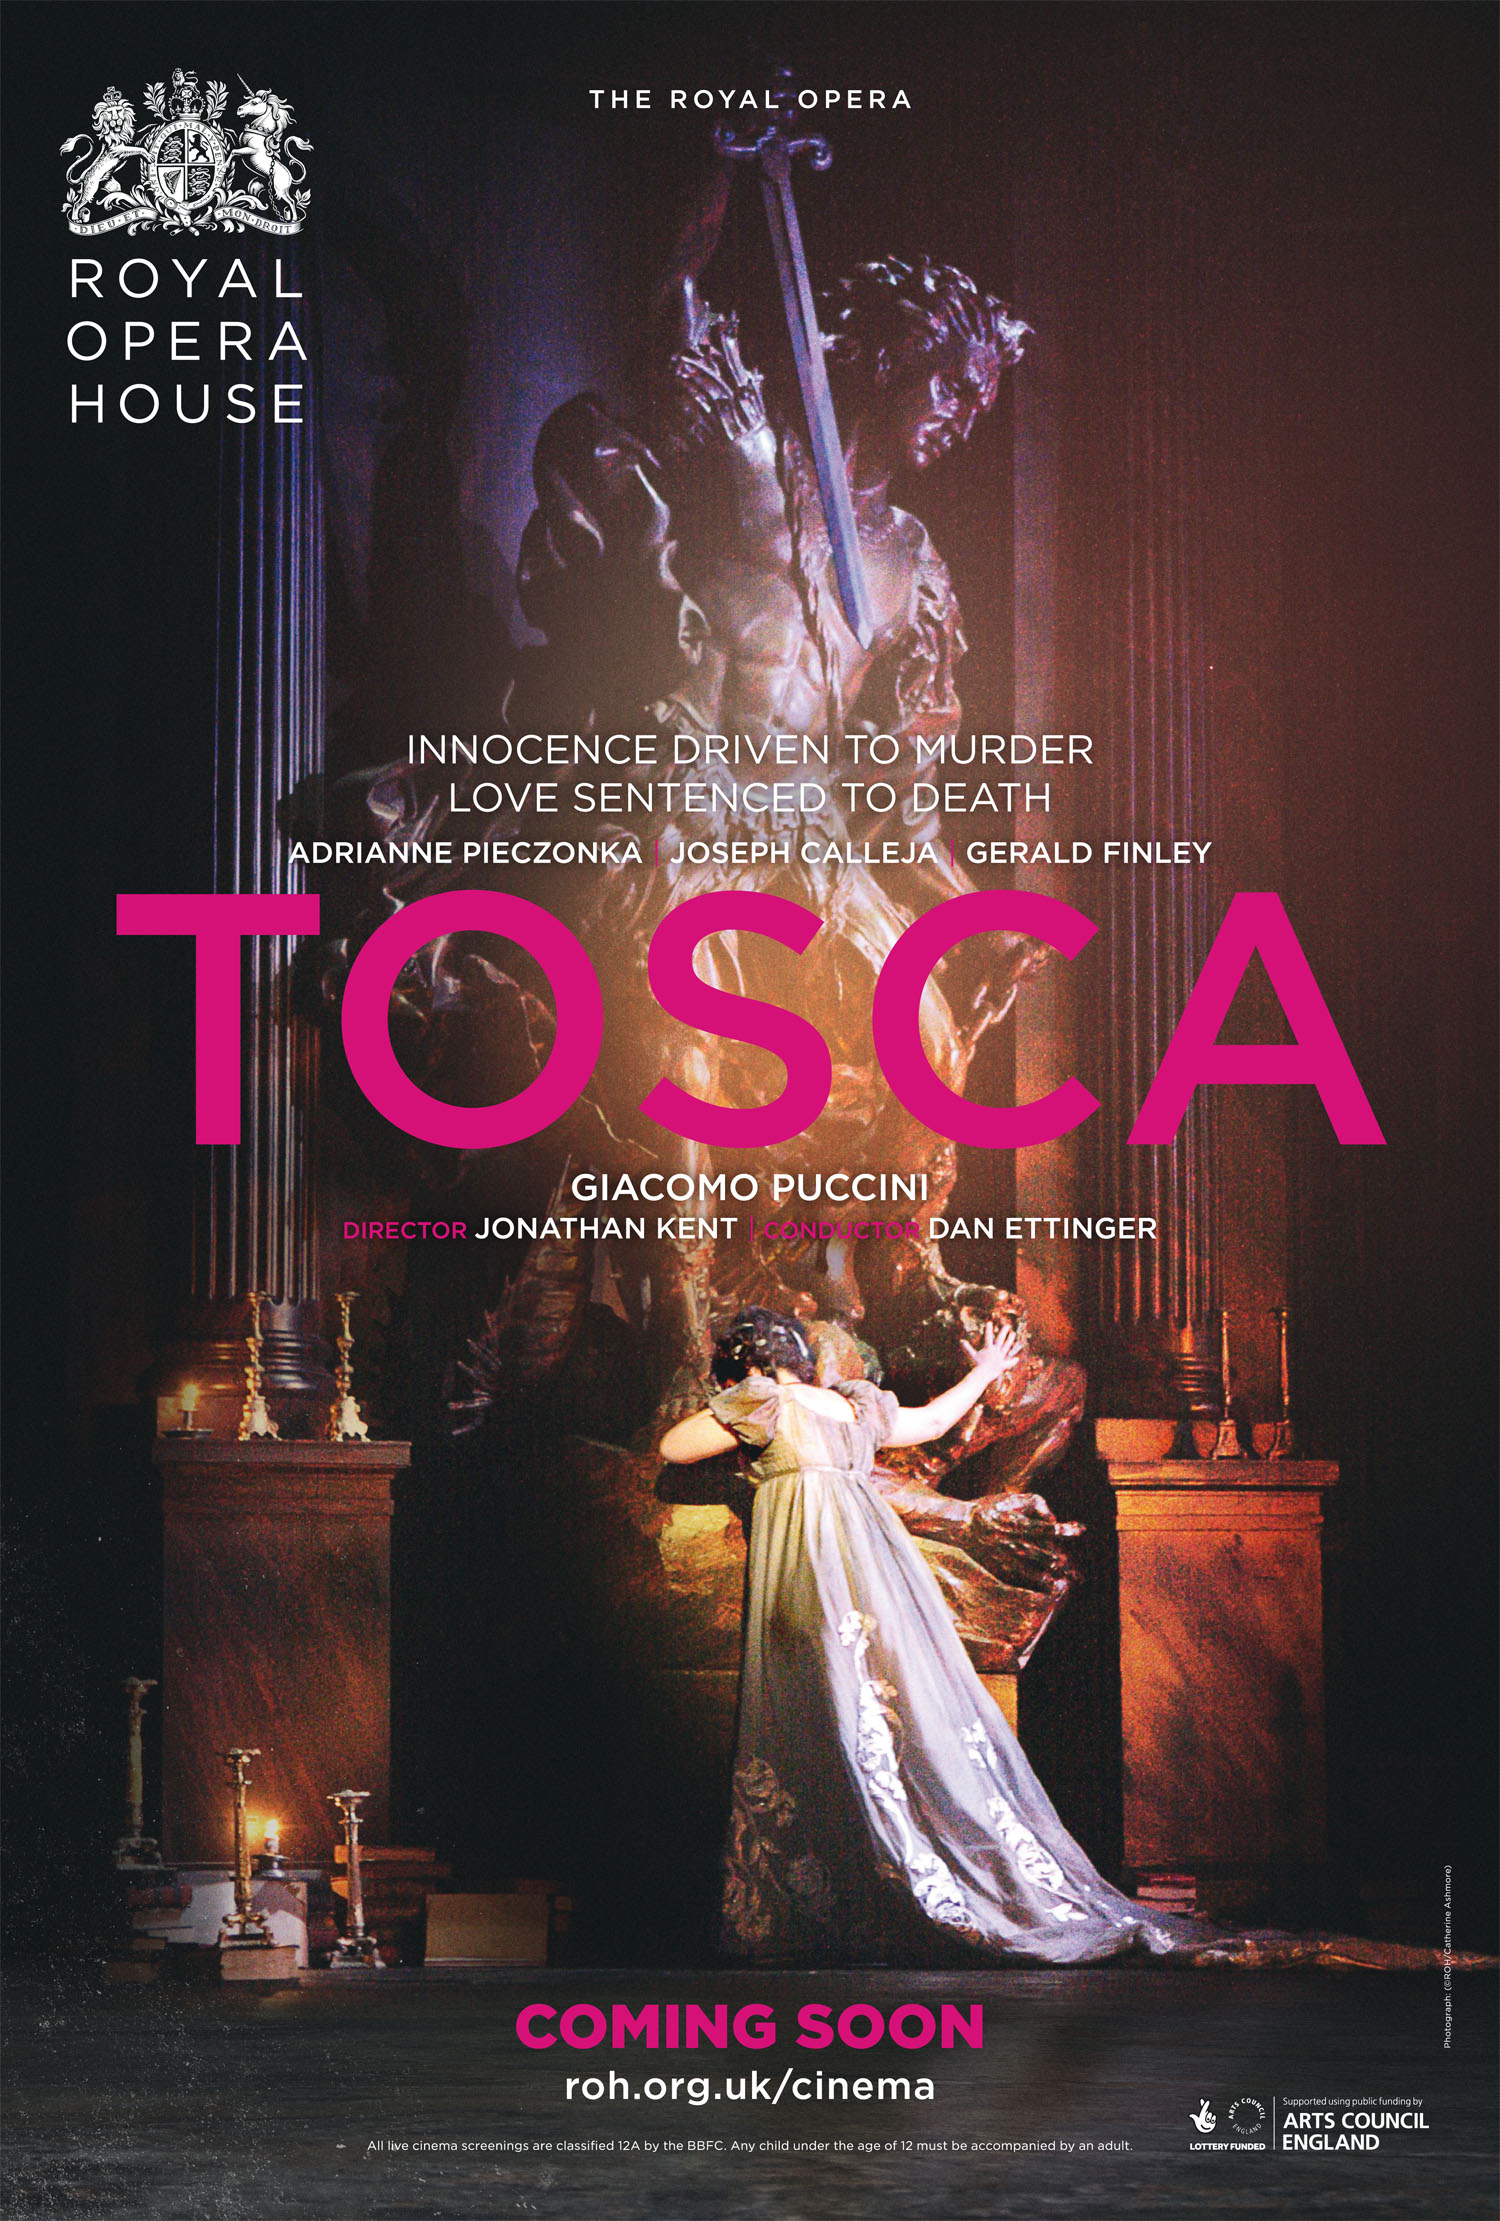 Òpera 'Tosca' - Royal Opera House